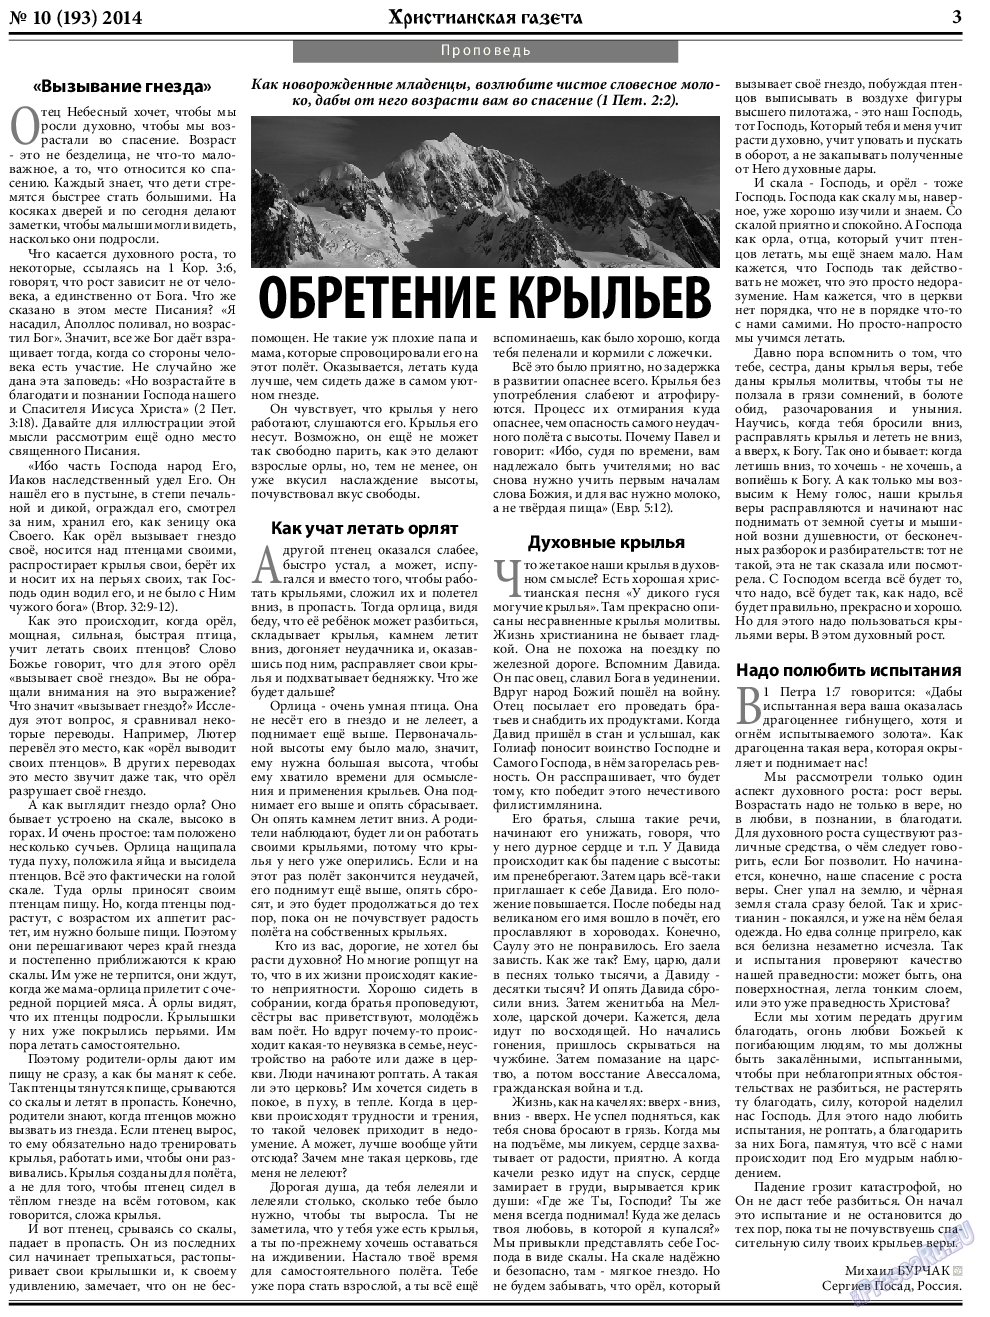 Христианская газета, газета. 2014 №10 стр.3